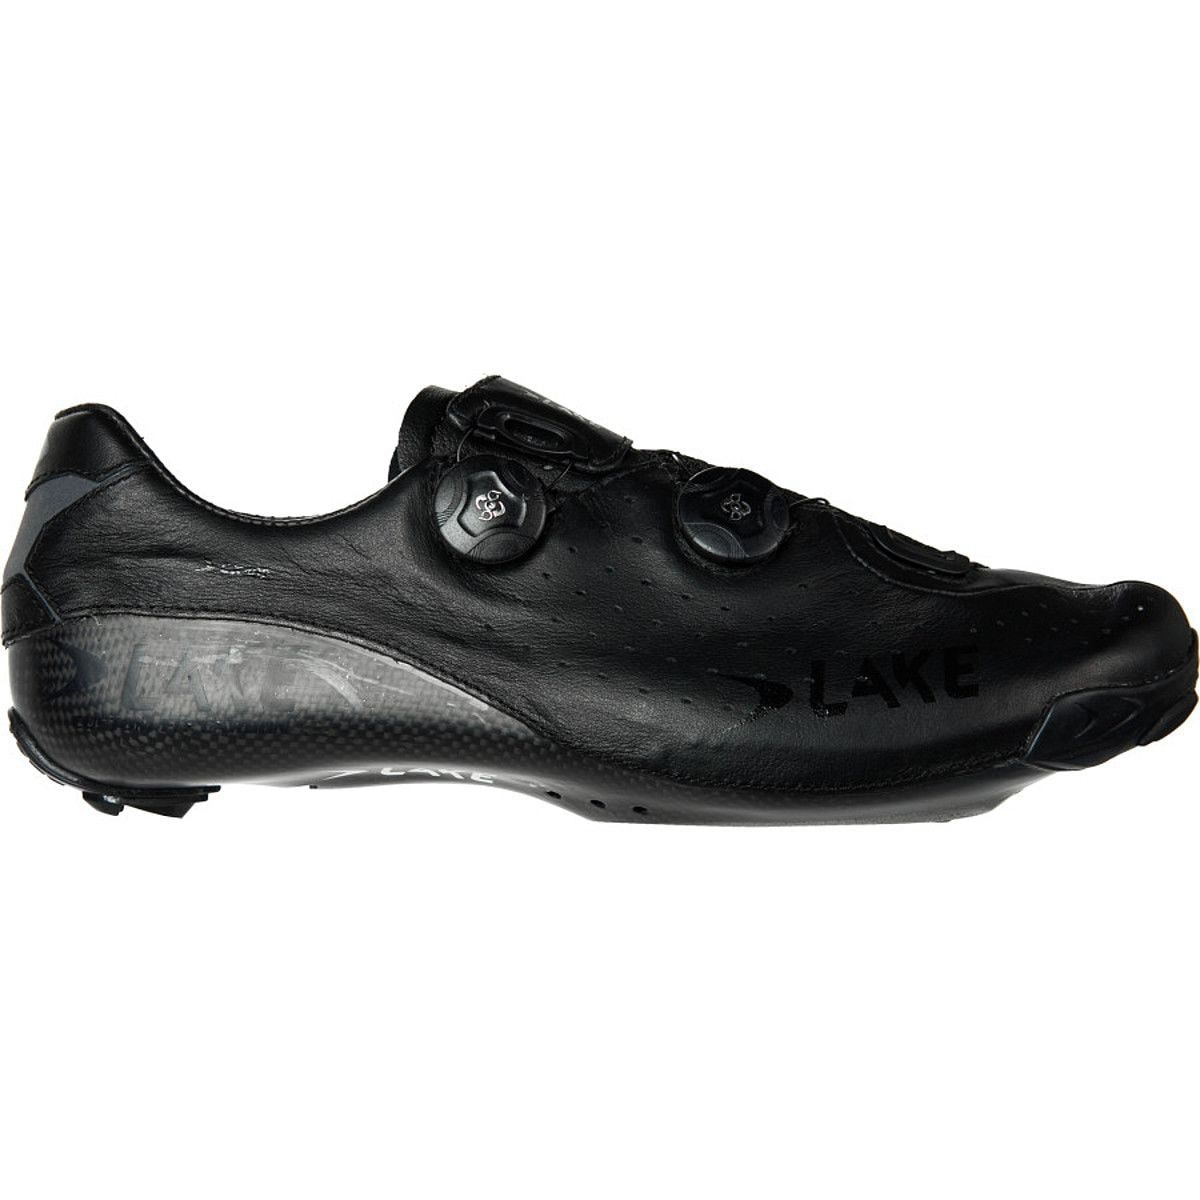 Lake CX402 Speedplay Cycling Shoe - Men's